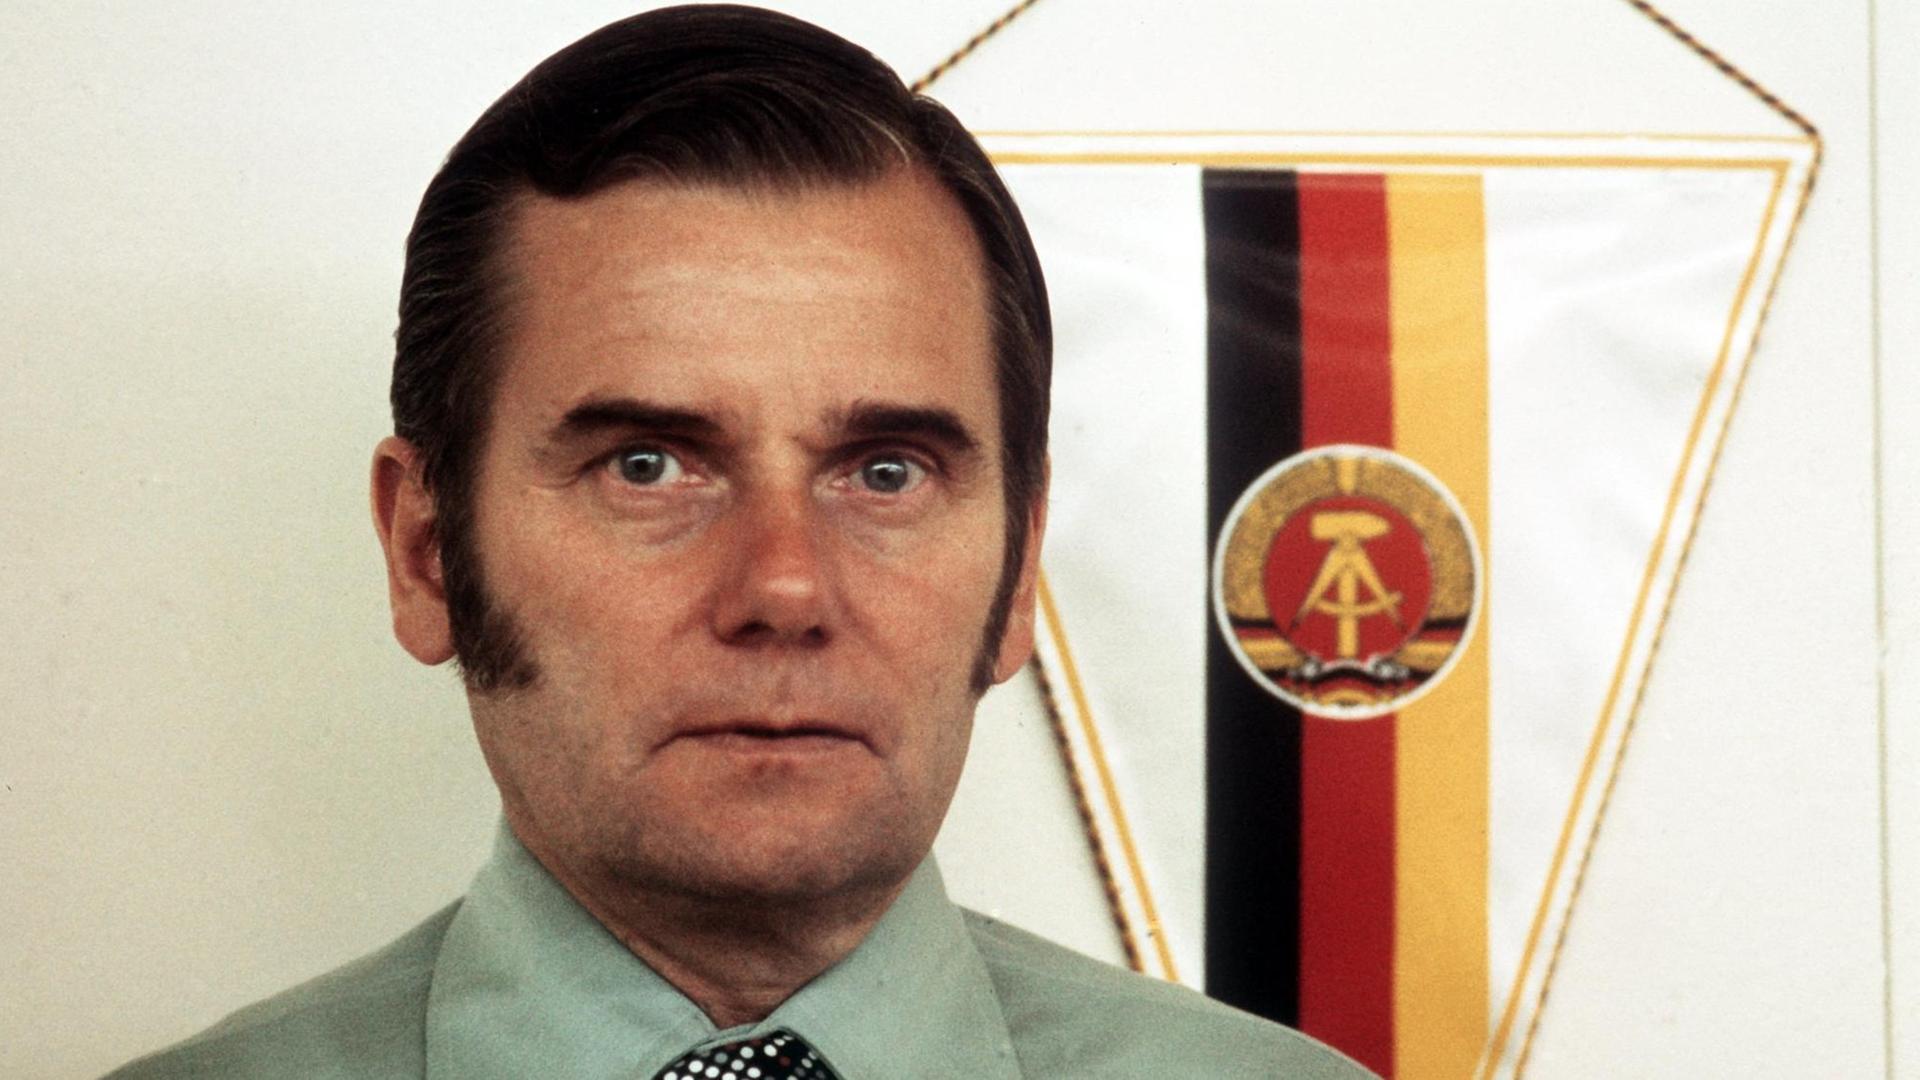 Porträt von Manfred Ewald, dem mächtigsten Mann im DDR-Sport. Im Hintergrund ist die Flagge der DDR zu sehen.